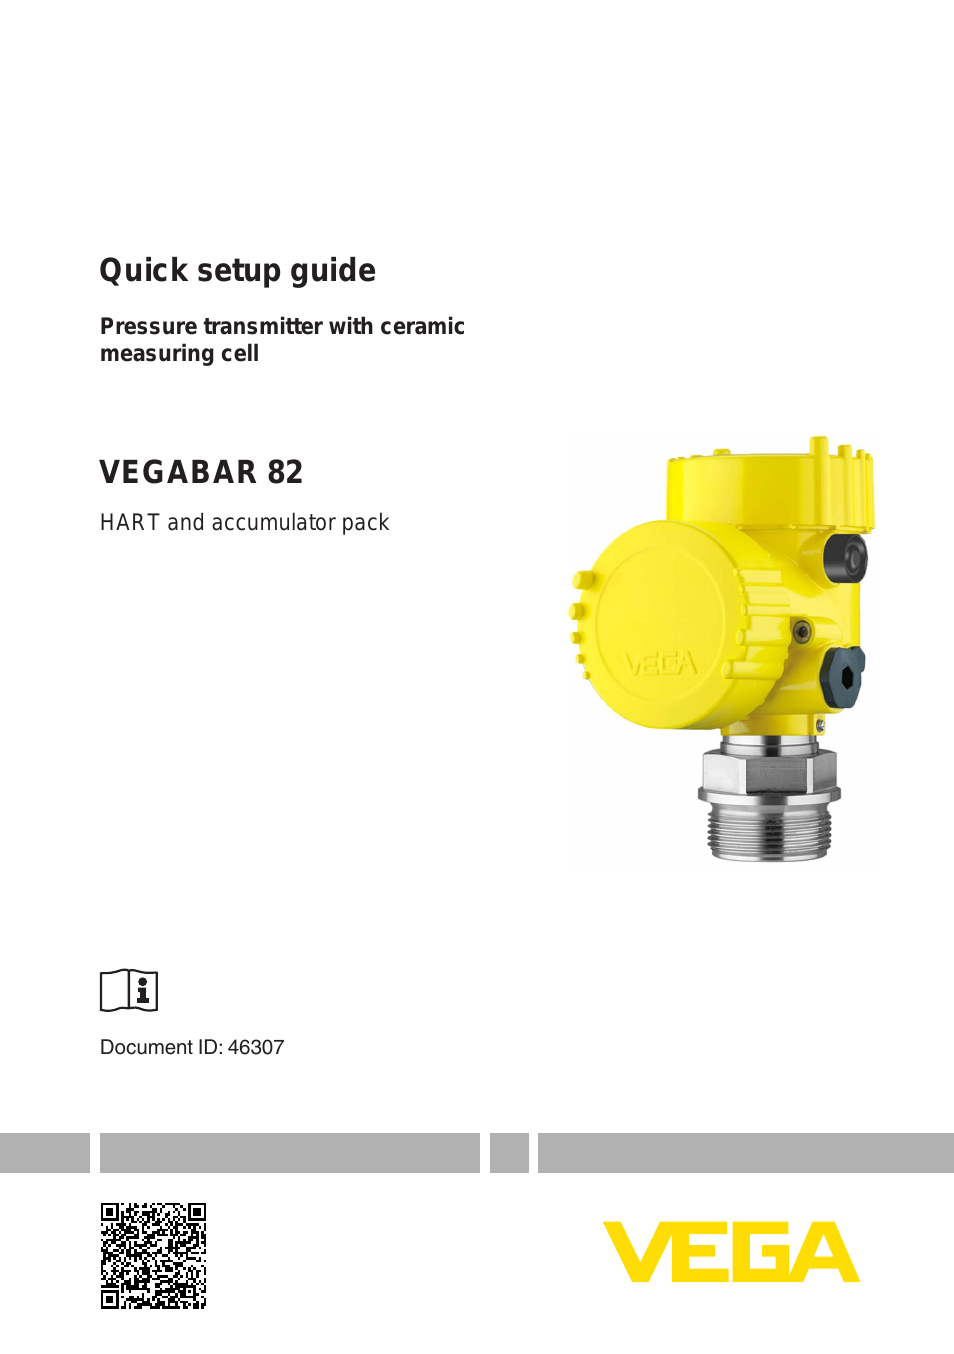 VEGABAR 82 HART and accumulator pack - Quick setup guide